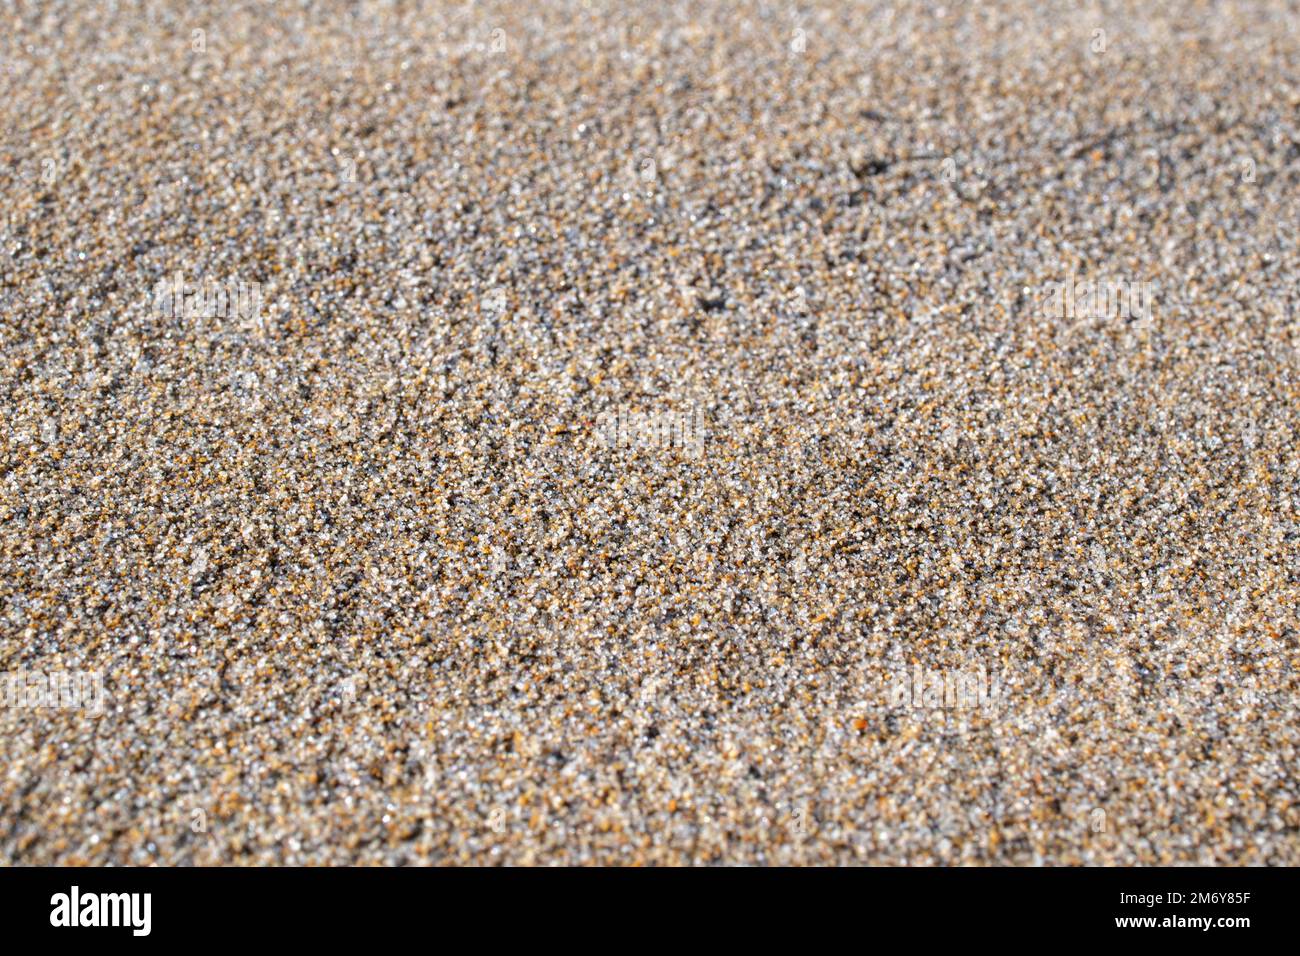 Sandtextur und Hintergrund. Sand am Strand im Hintergrund. Sandstrand für schwarzen Hintergrund. Sand an einem Strand im Sommer. Kopierbereich. Sommerkonzept Stockfoto